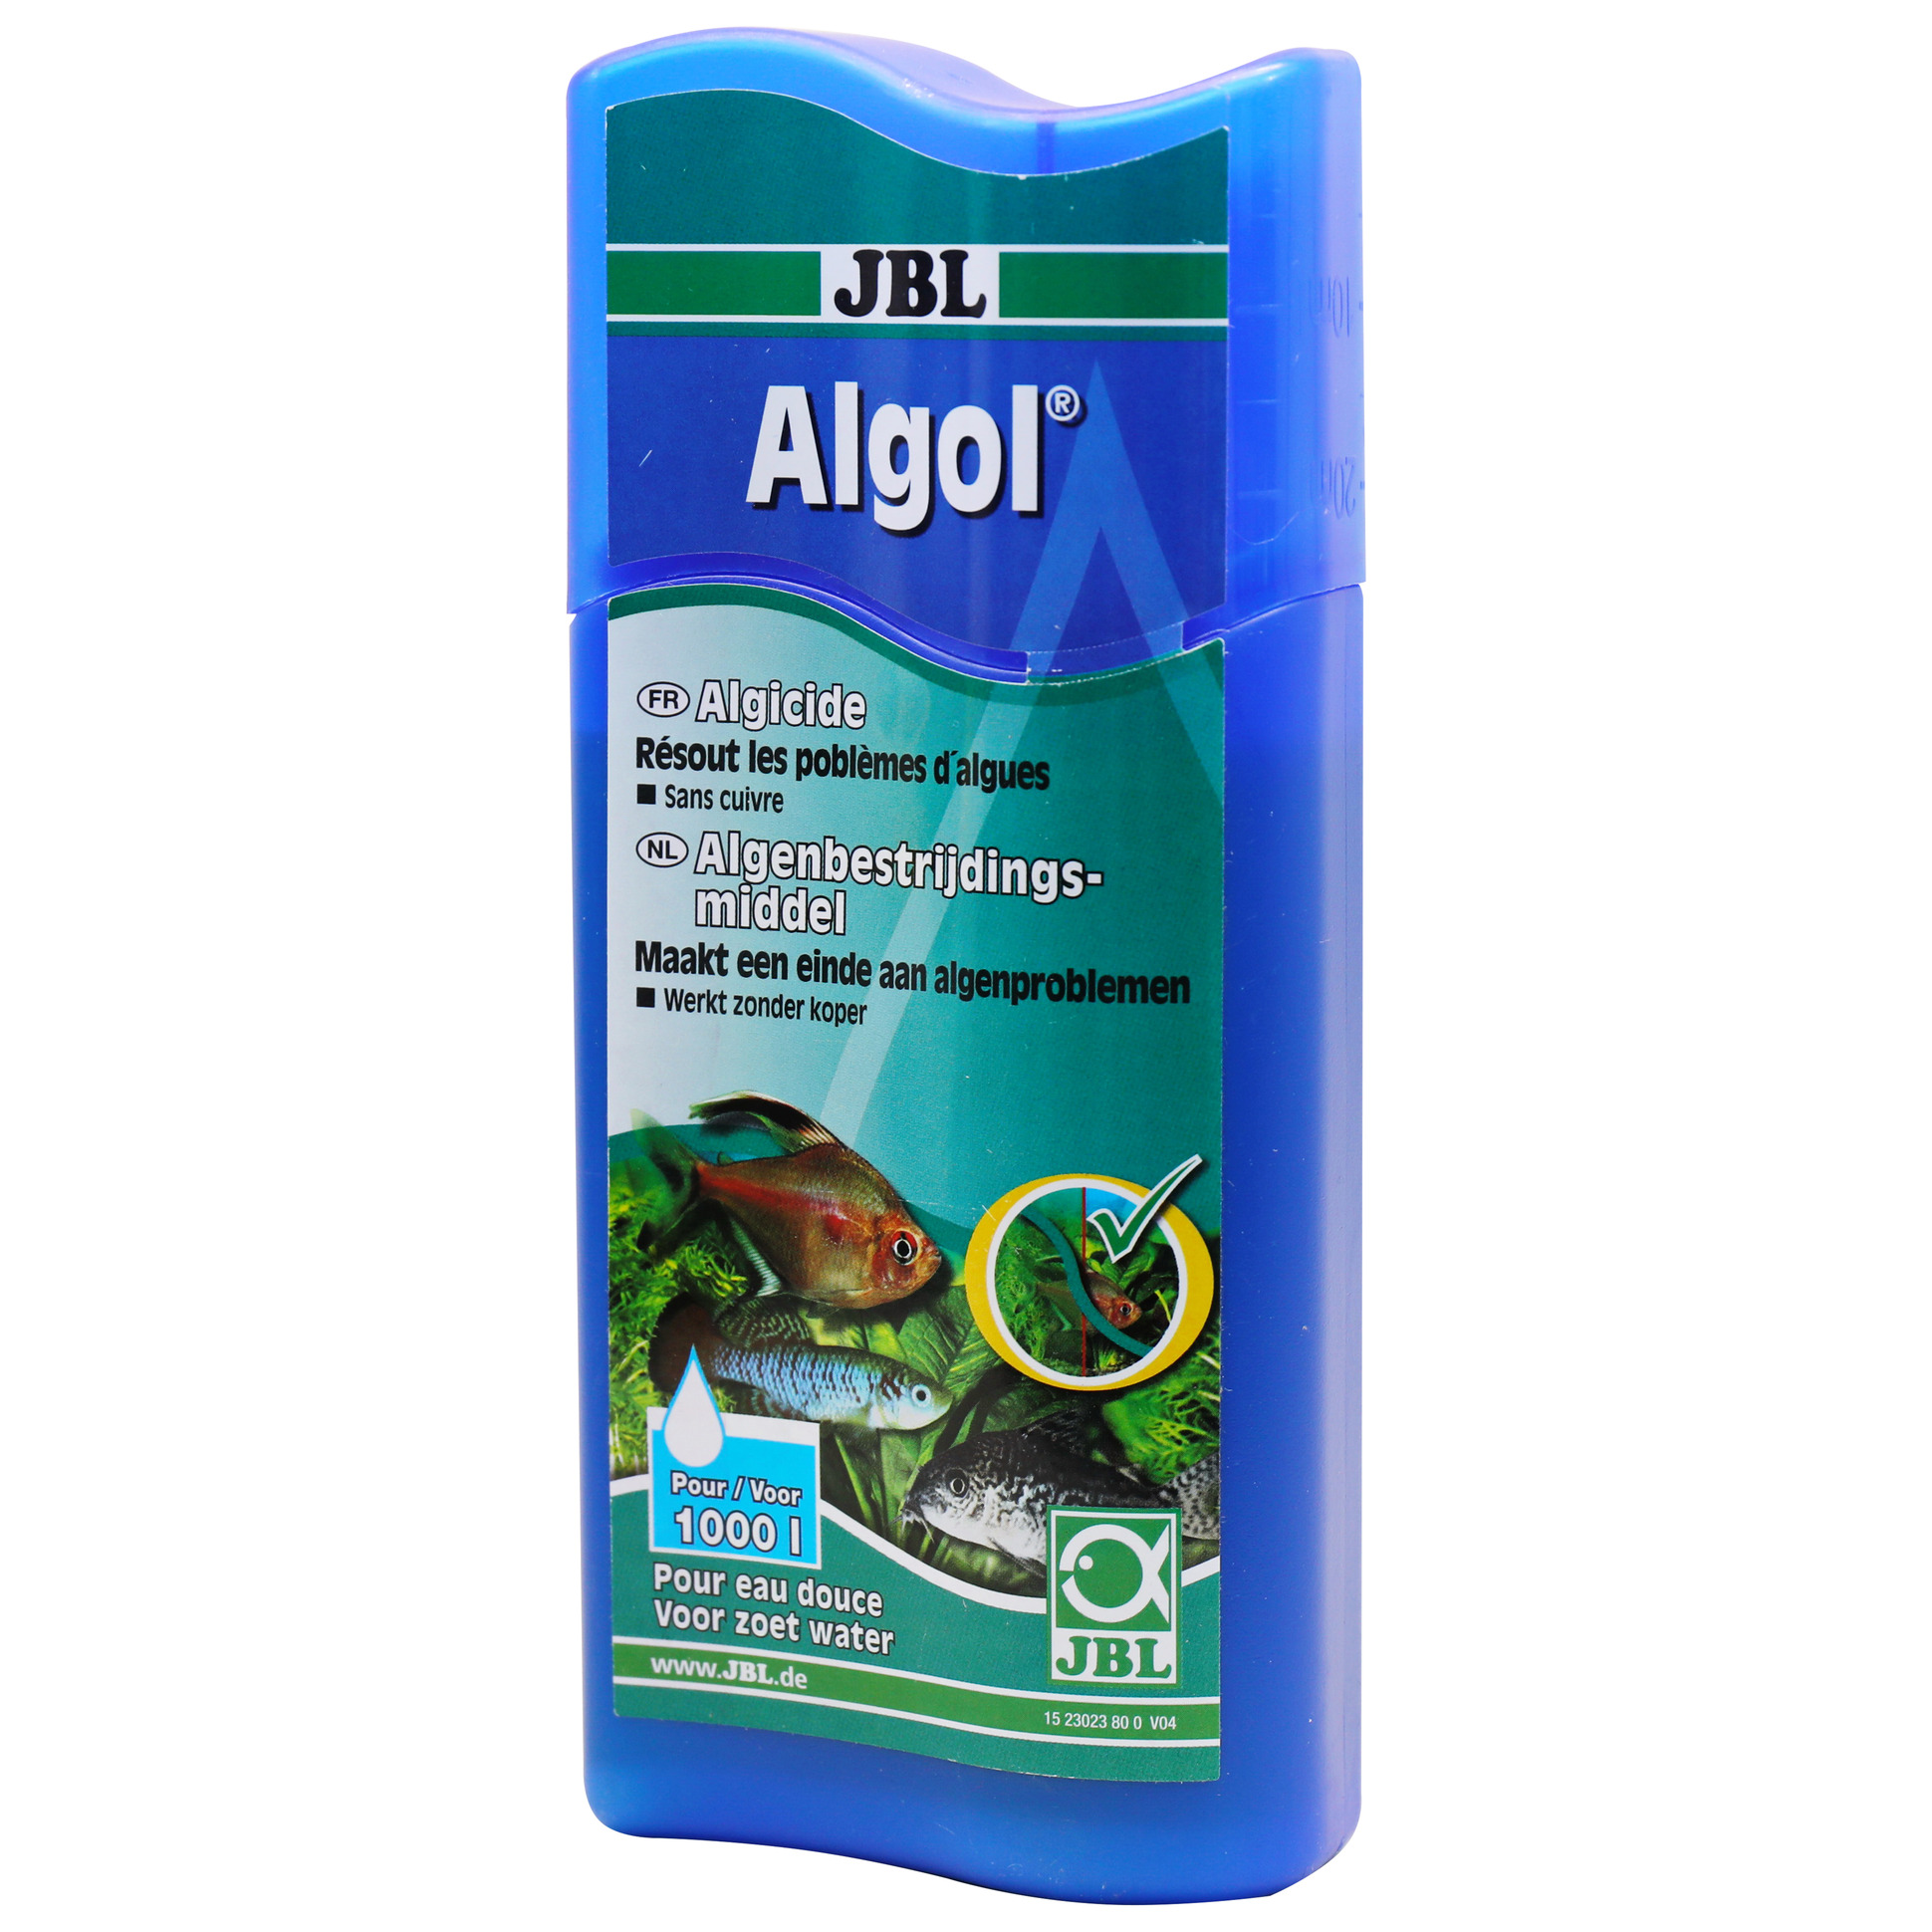 JBL Algol Algenmittel zur Bekämpfung von Algen in Süßwasser-Aquarien